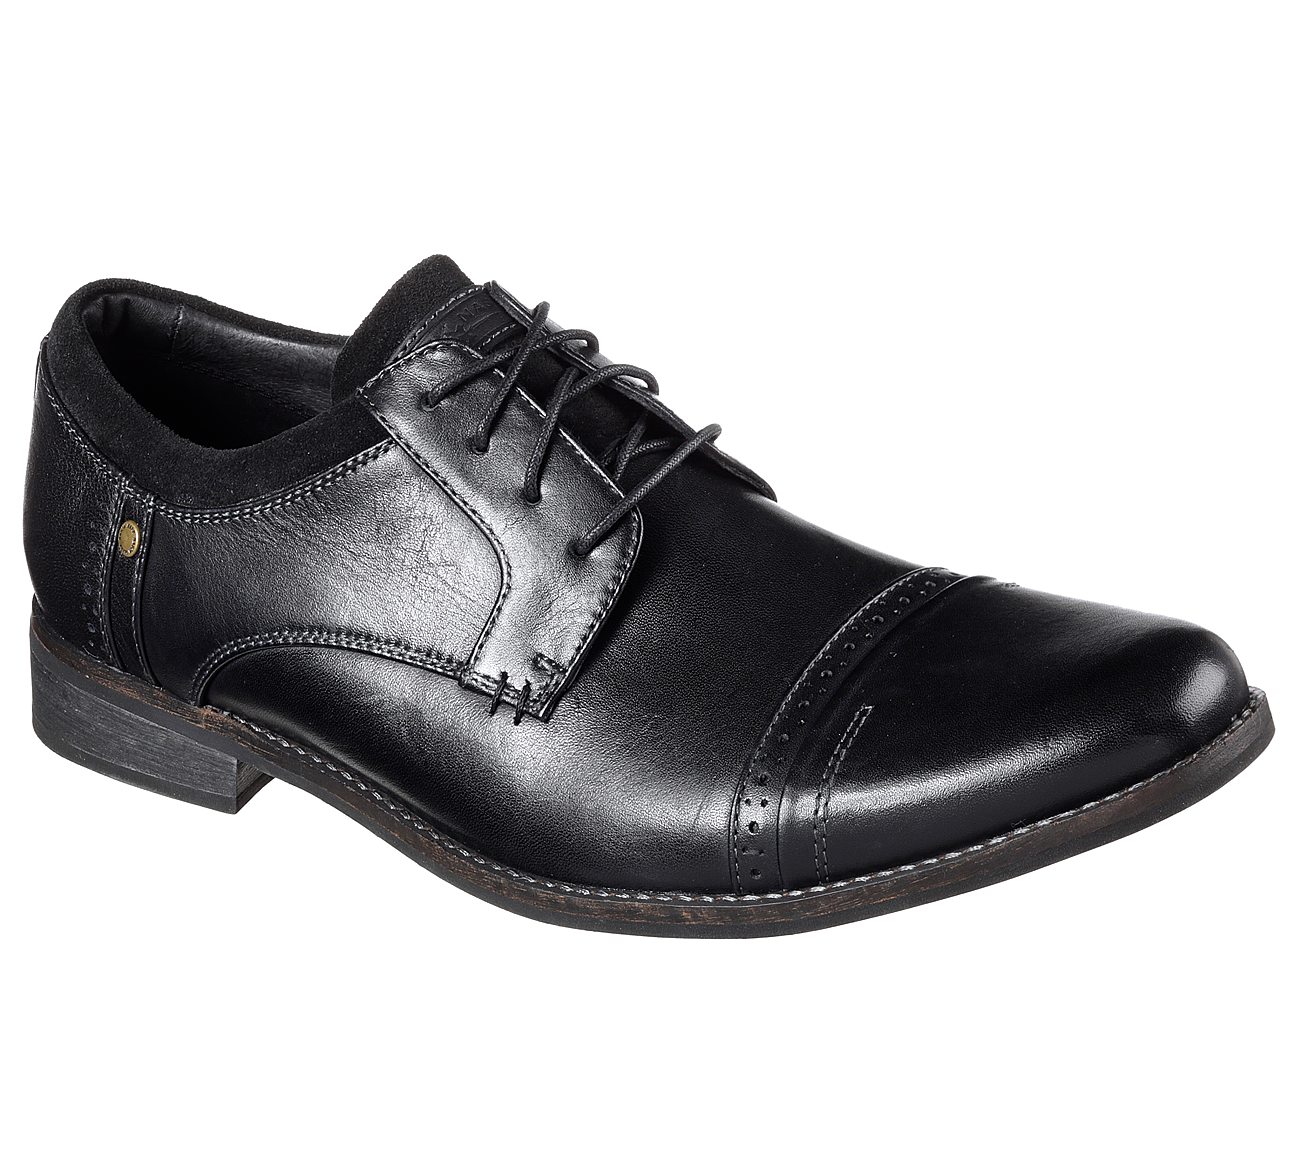 mark nason leather shoes